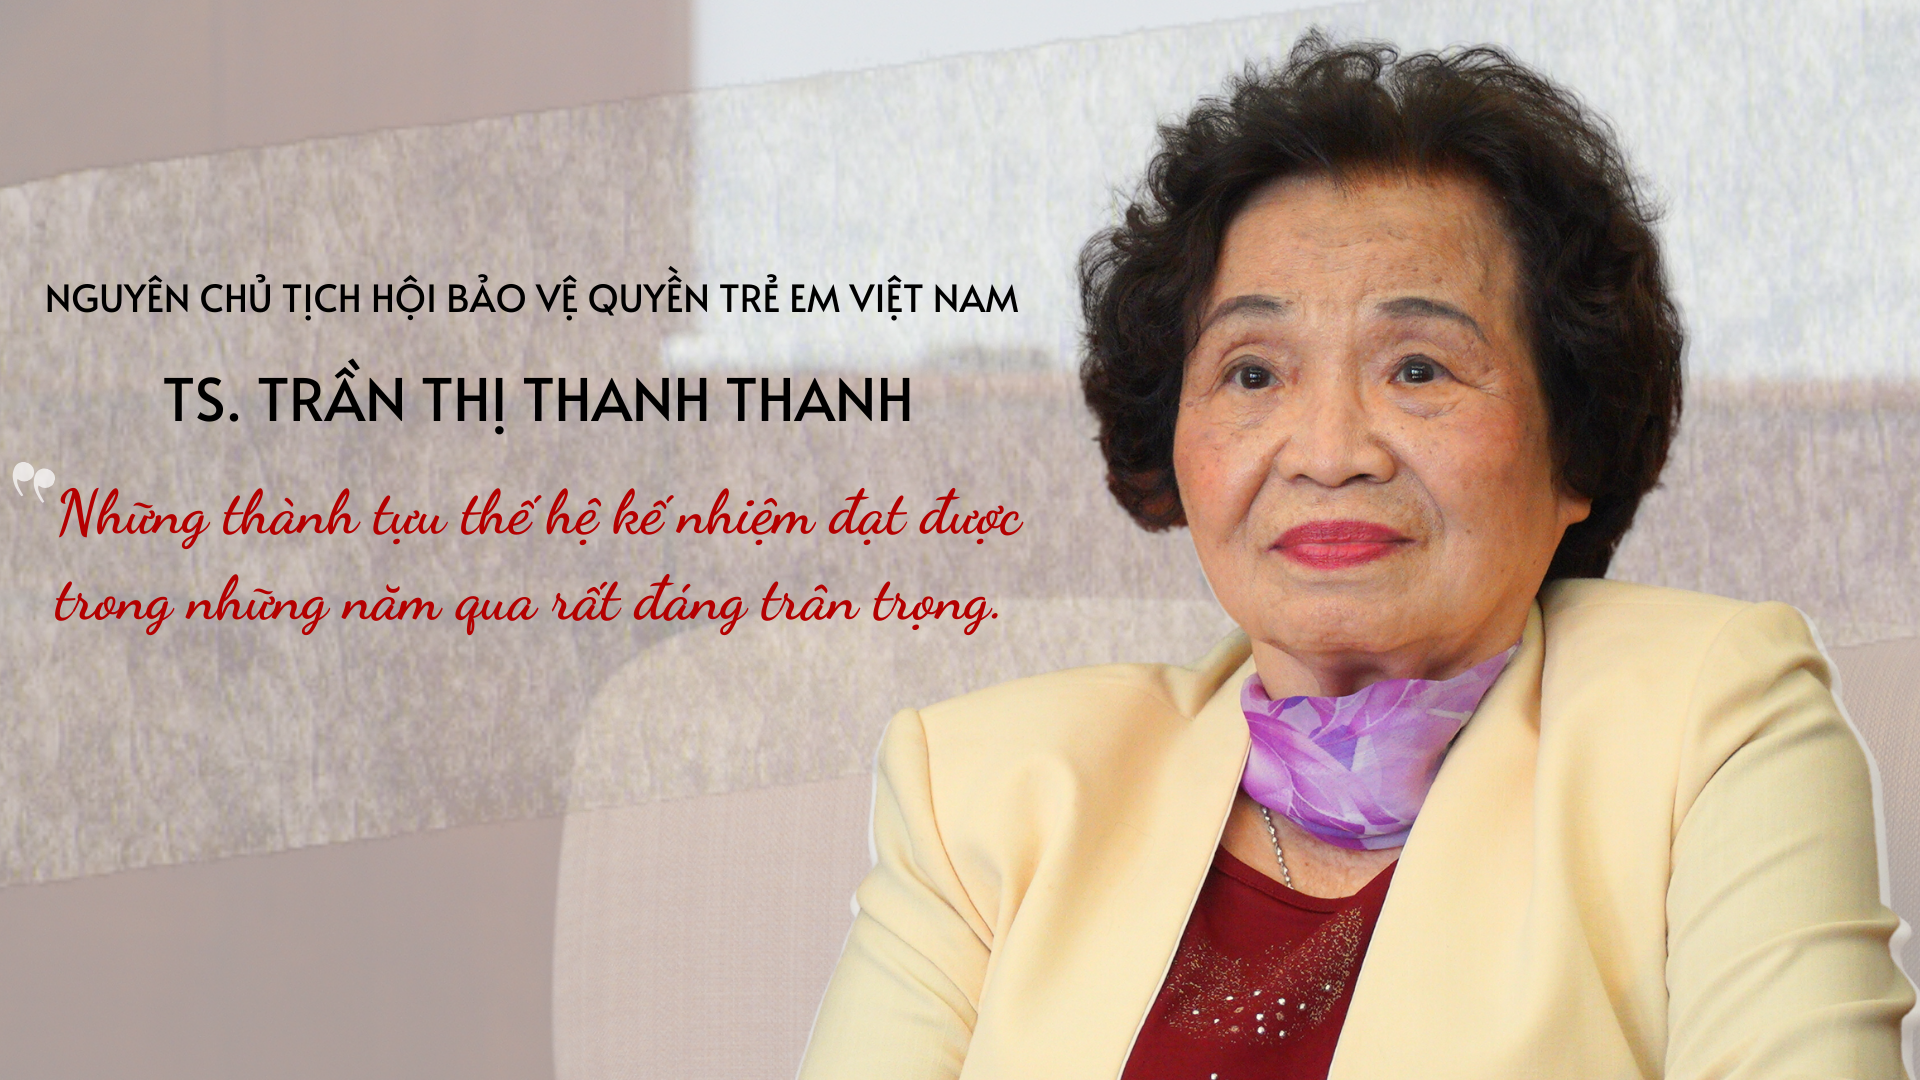 Tiến sĩ Trần Thị Thanh Thanh, Nguyên Chủ tịch Hội Bảo vệ quyền trẻ em Việt Nam: ‘Những thành tựu thế hệ kế nhiệm đạt được trong những năm qua rất đáng trân trọng’